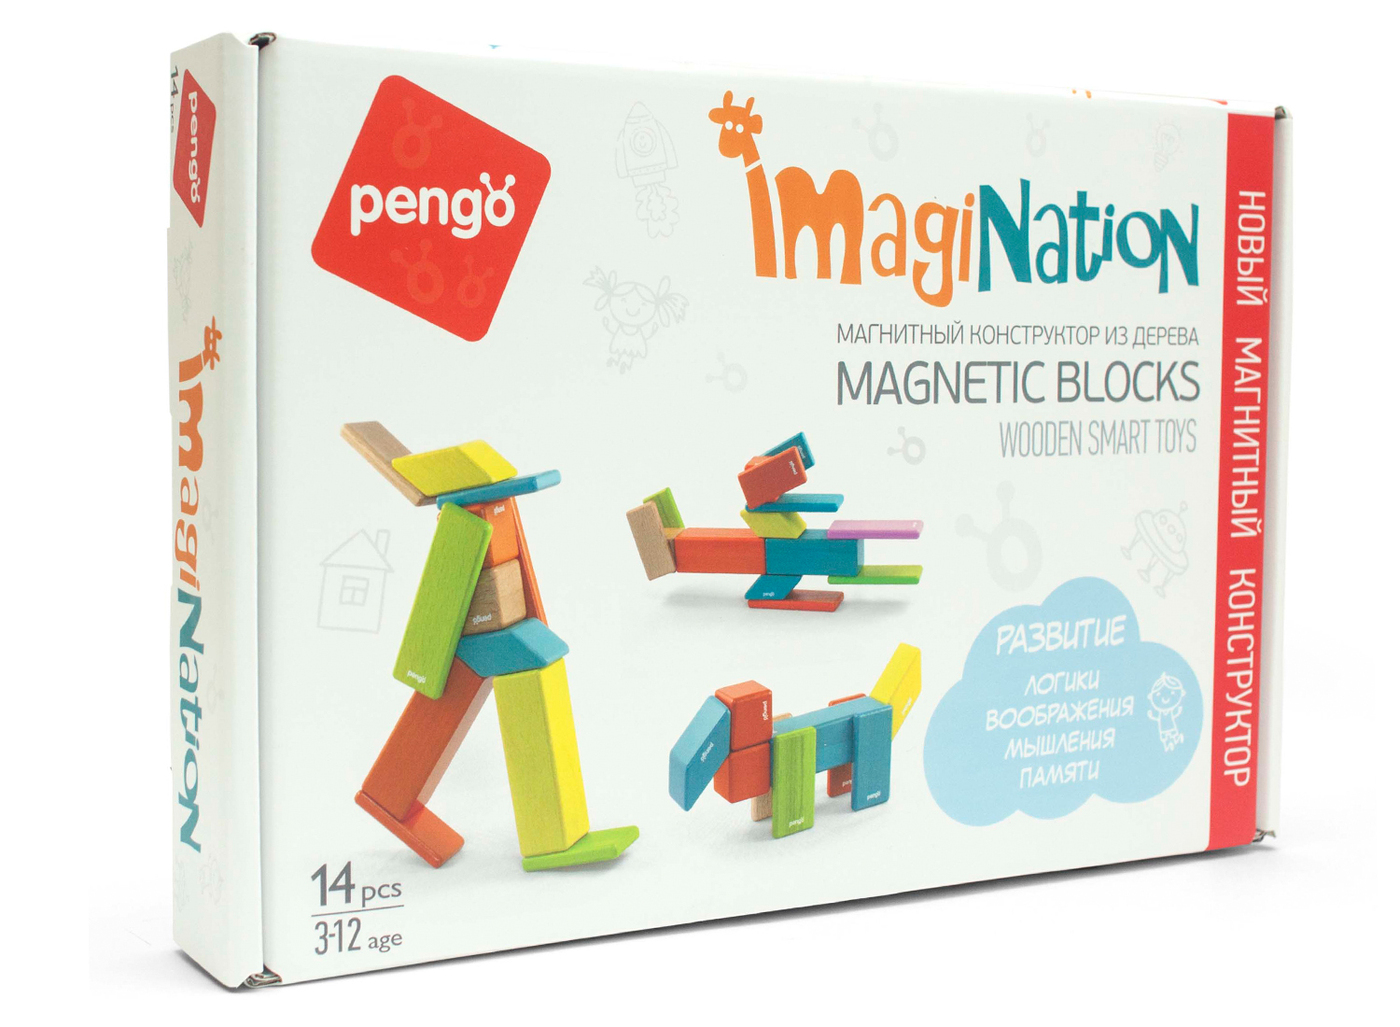 Купить imagination. Магнитный конструктор в деревянной коробке. Детские магнитные конструкторы и игрушки Pengo.